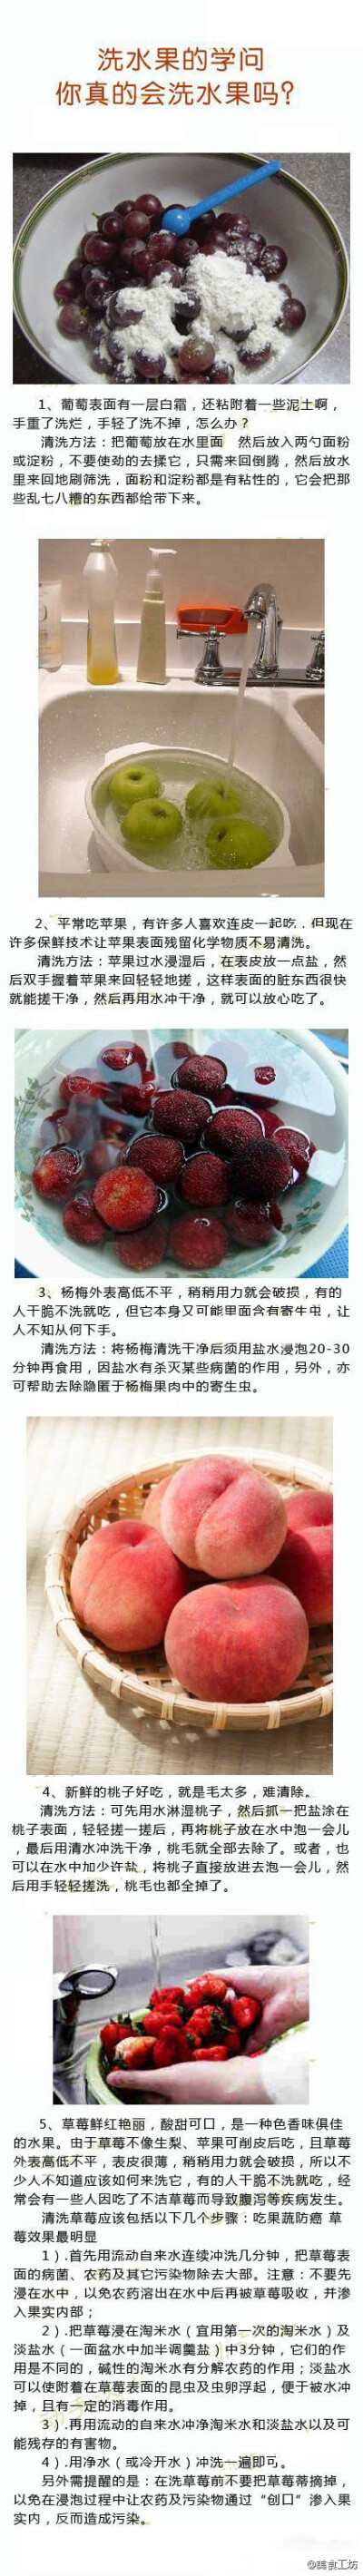 洗水果的学问——你真的会洗水果吗？洗水果的达人教你如何洗葡萄、苹果、杨梅、桃子、草莓！